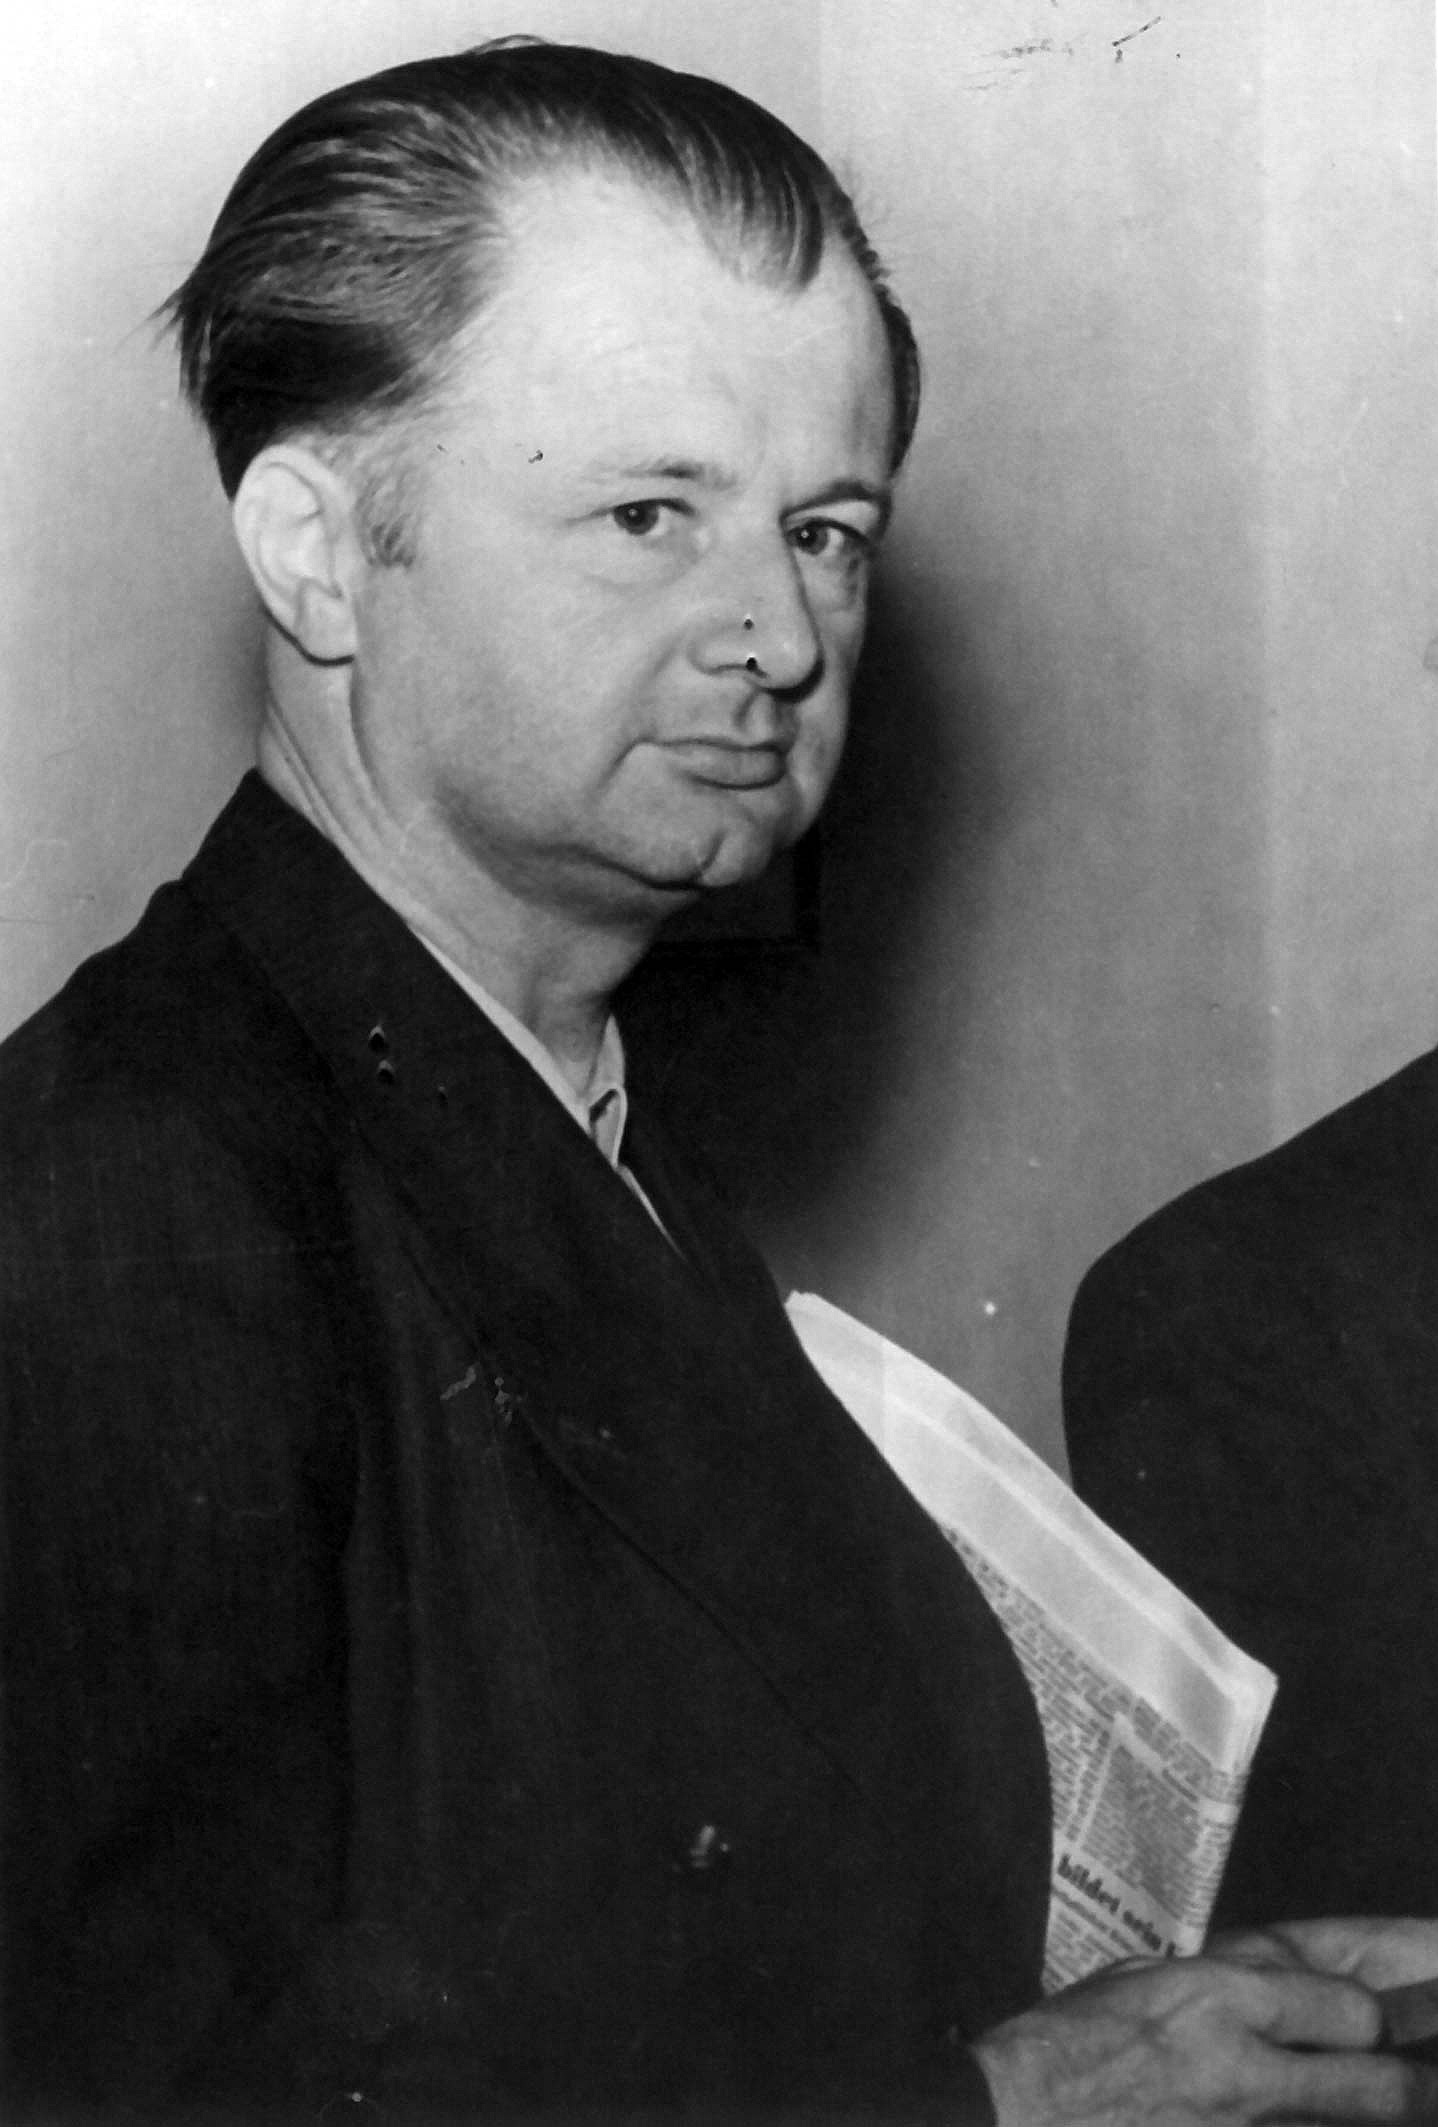 Schwarz-Weiß-Fotografie von Walter Menzel als Innenminister von Nordrhein-Westfalen, 1948, Fotograf: Ege, Rechte: AdsD, Quelle: AdsD, 6/FOTA046660